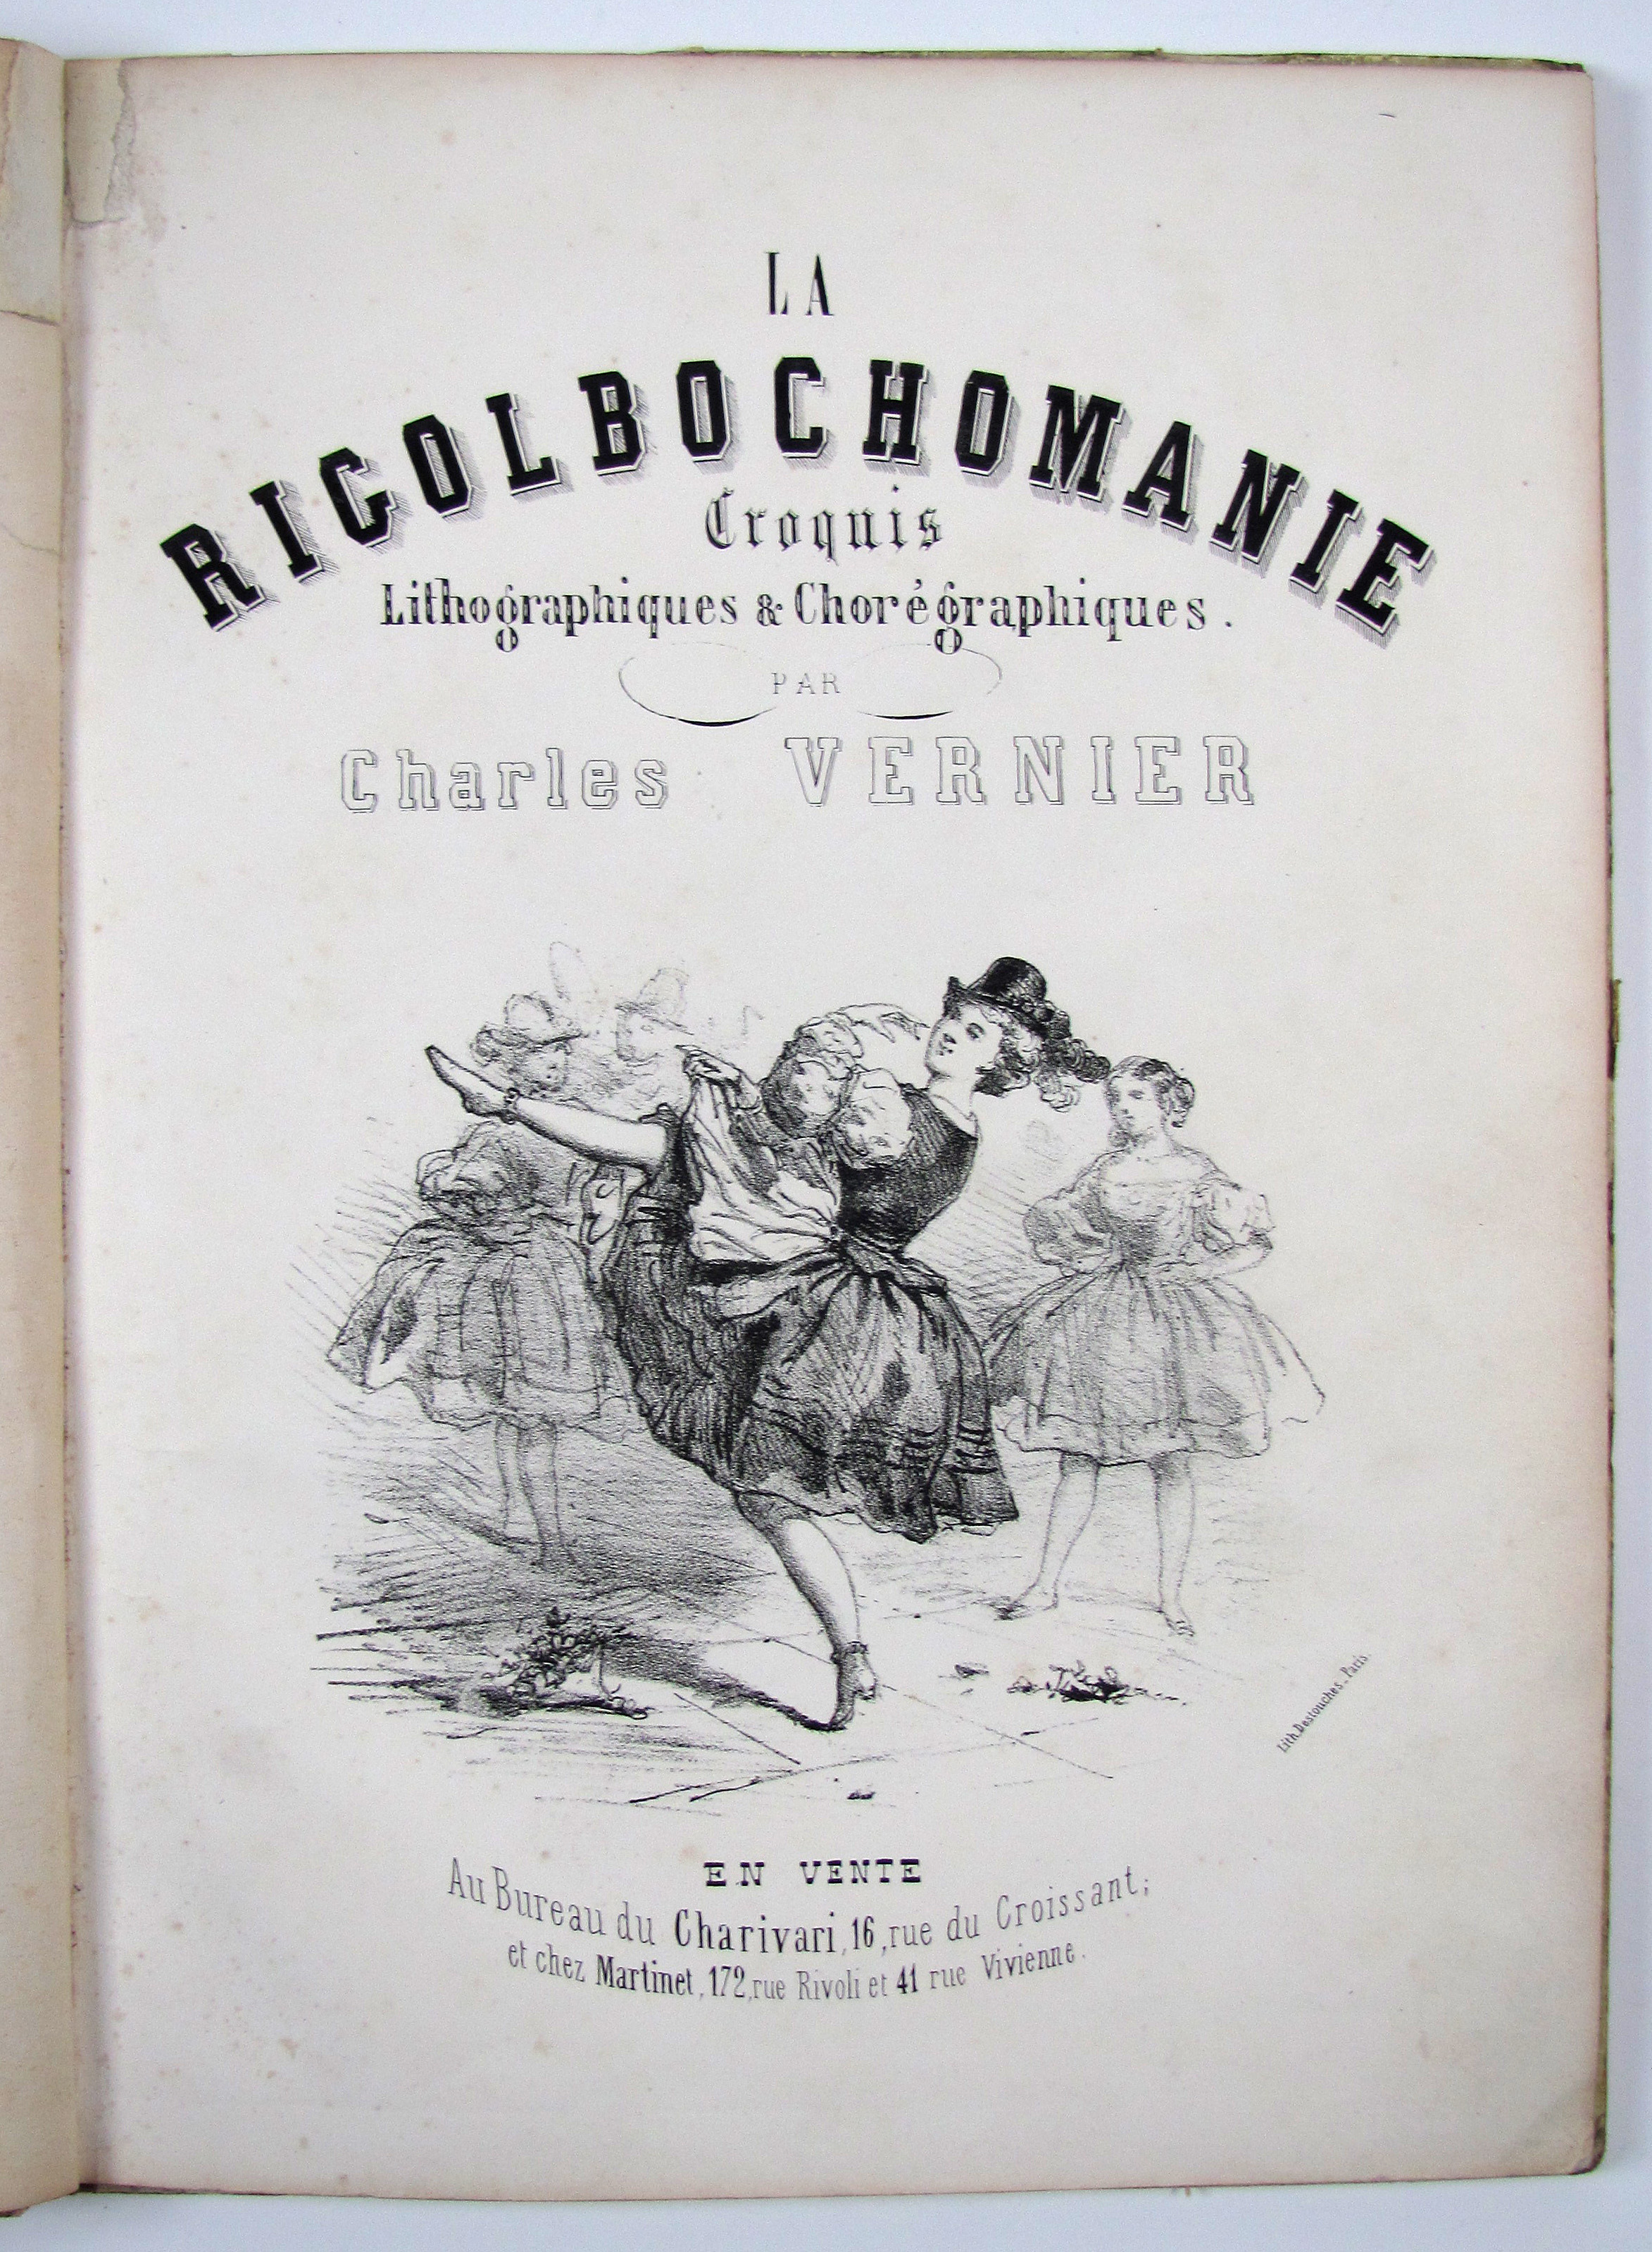 Vernier, Ch., La Rigolbochomanie. Croquis lithographiques & choréographiques.